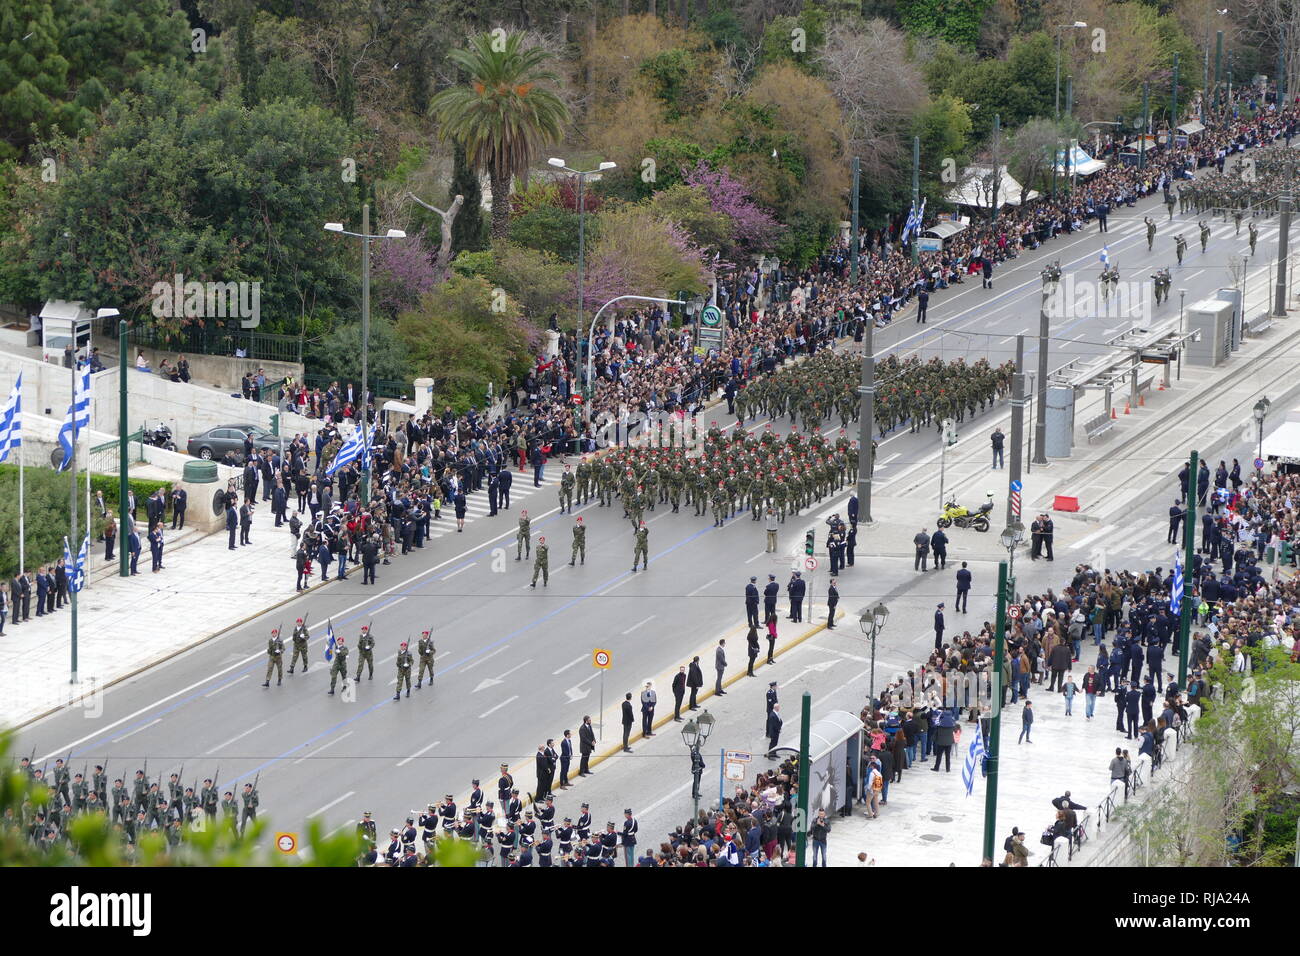 Militare greca, sfilata di Atene per il 2018 Celebrazioni del giorno dell'indipendenza. La Grecia è un membro dell'Organizzazione del Trattato del Nord Atlantico (NATO). Foto Stock